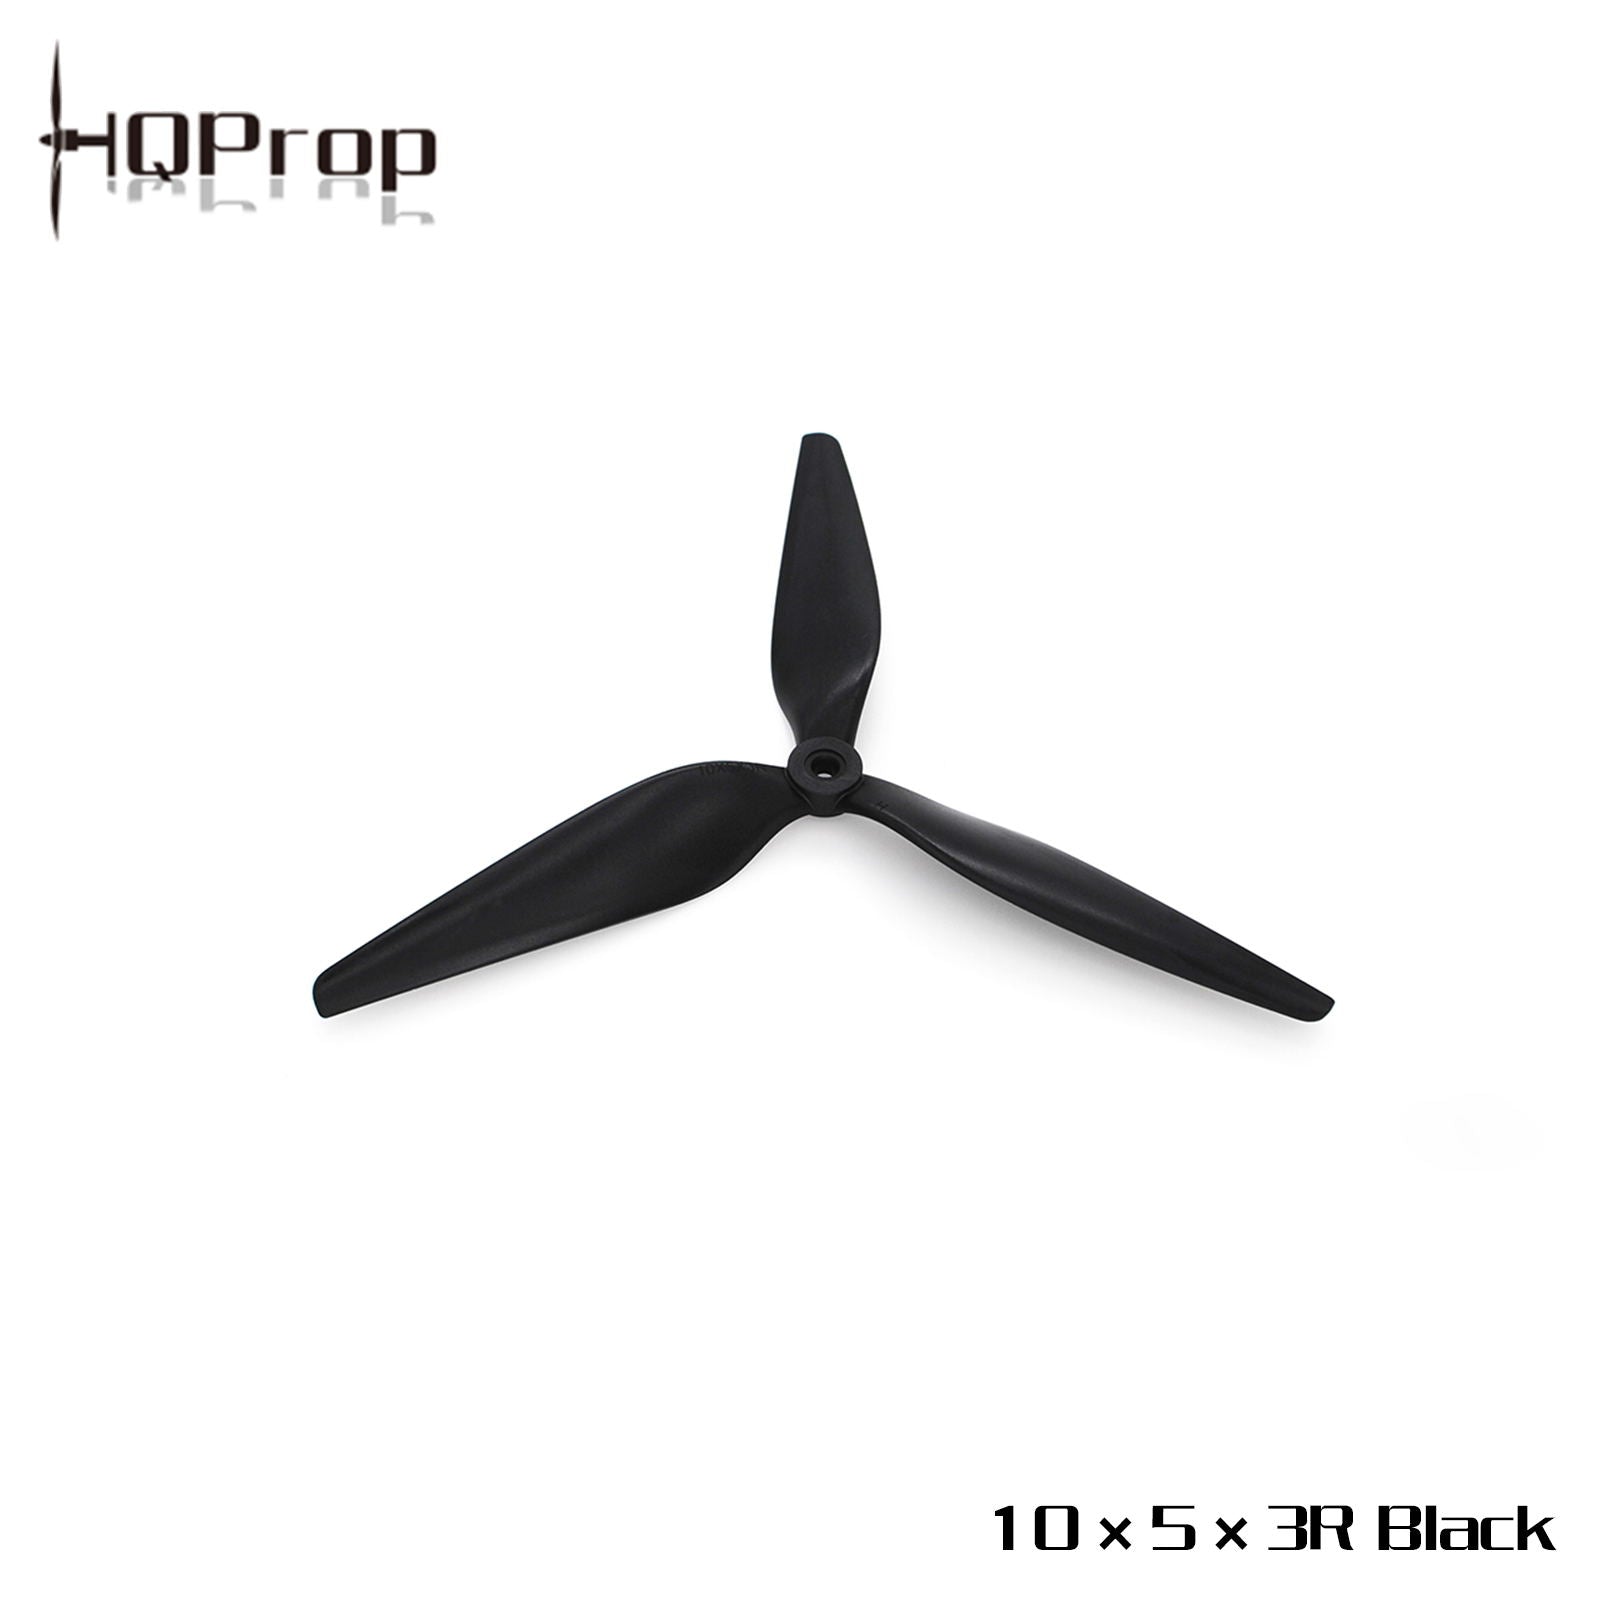 HQProp MacroQuad Prop 10X5X3 (CW) Black-Carbon Reinforced Nylon 1 - HQProp - Drone Authority